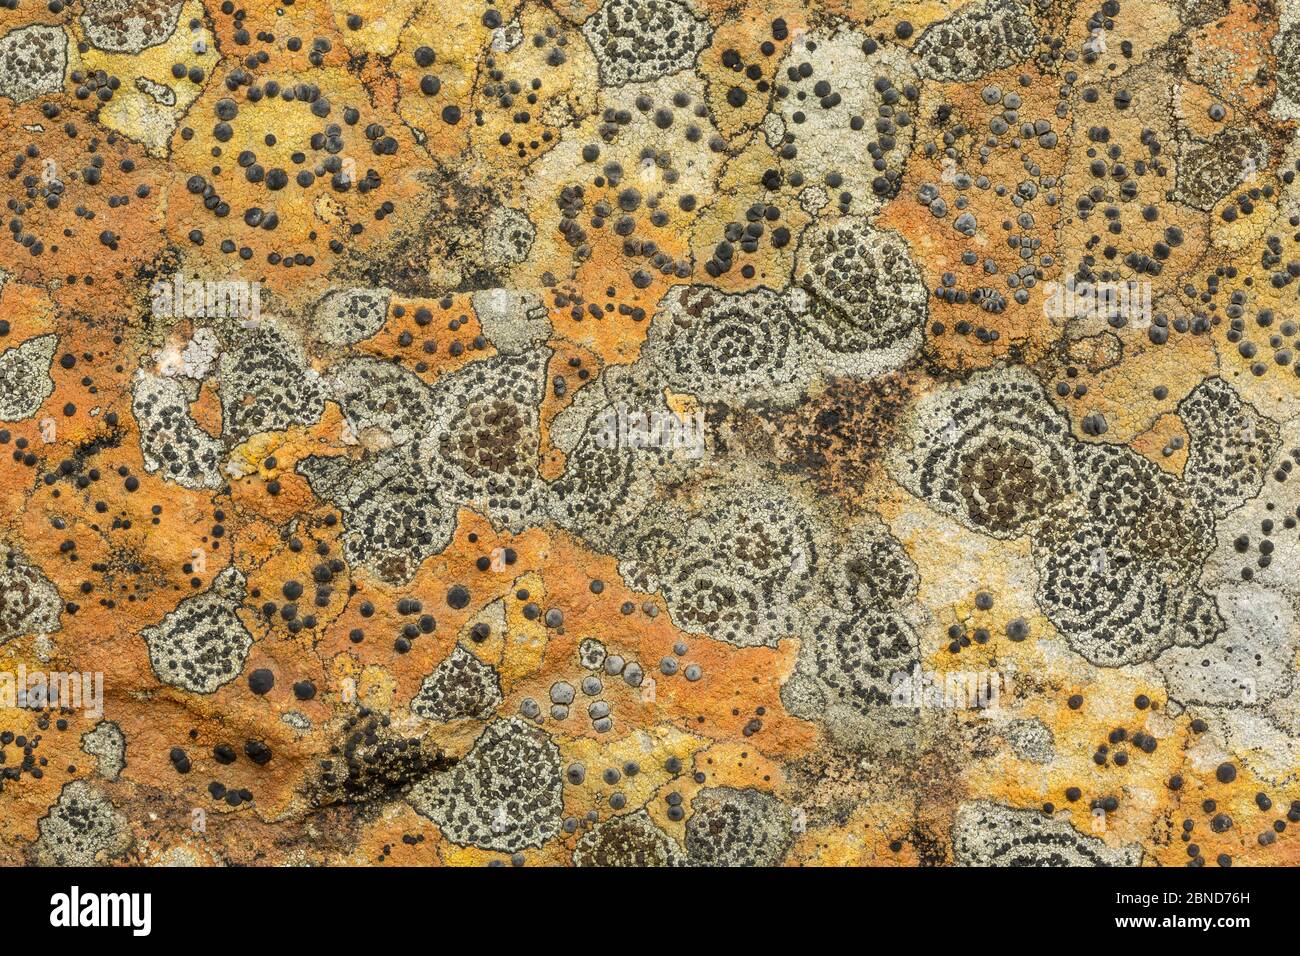 Zwei Flechten, konzentrische Felsflechten (Porpidia crustulata) und Lecidea lithophila, auf Sandstein. Derbyshire, England, Großbritannien, September. Stockfoto